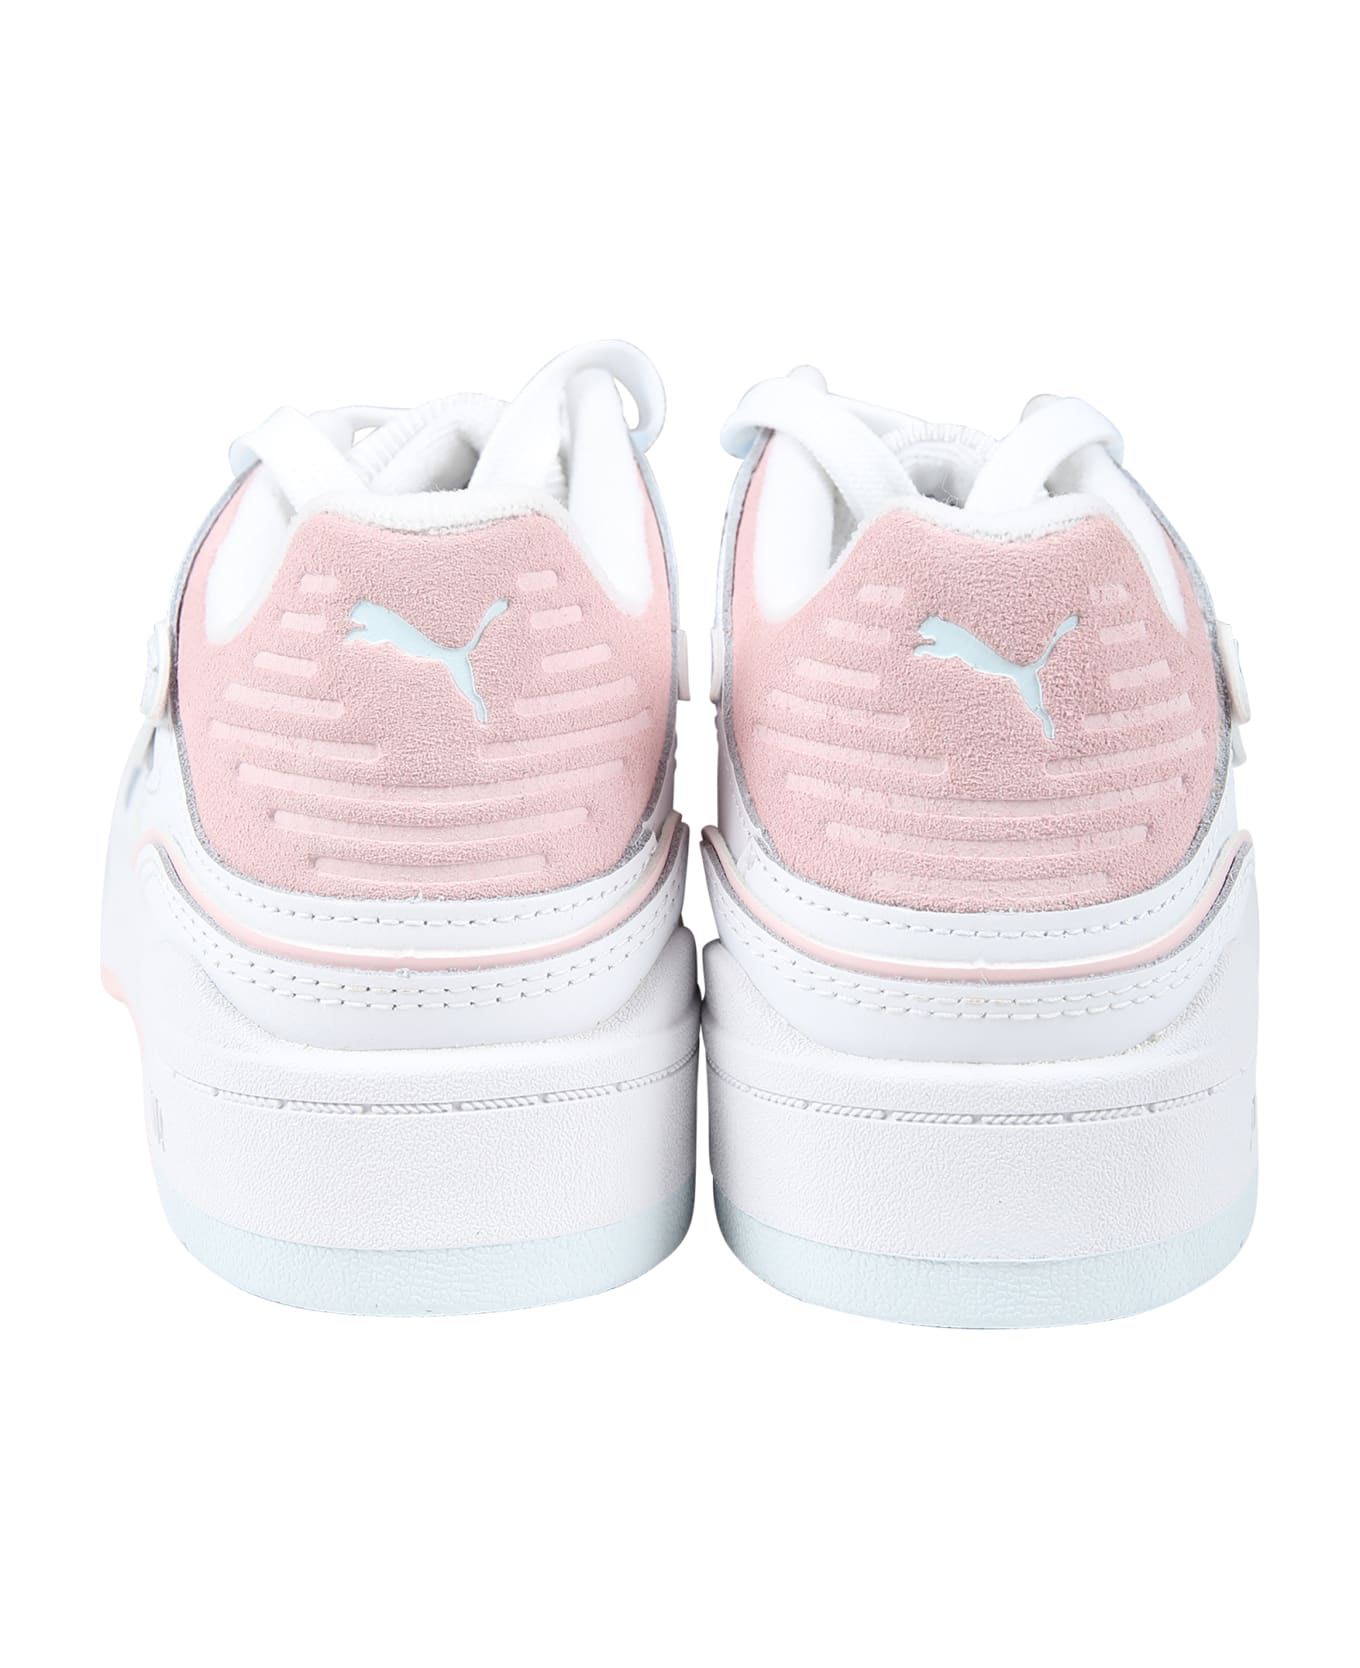 Puma White Slipstream Bball Jr Sneakers For Girl - White